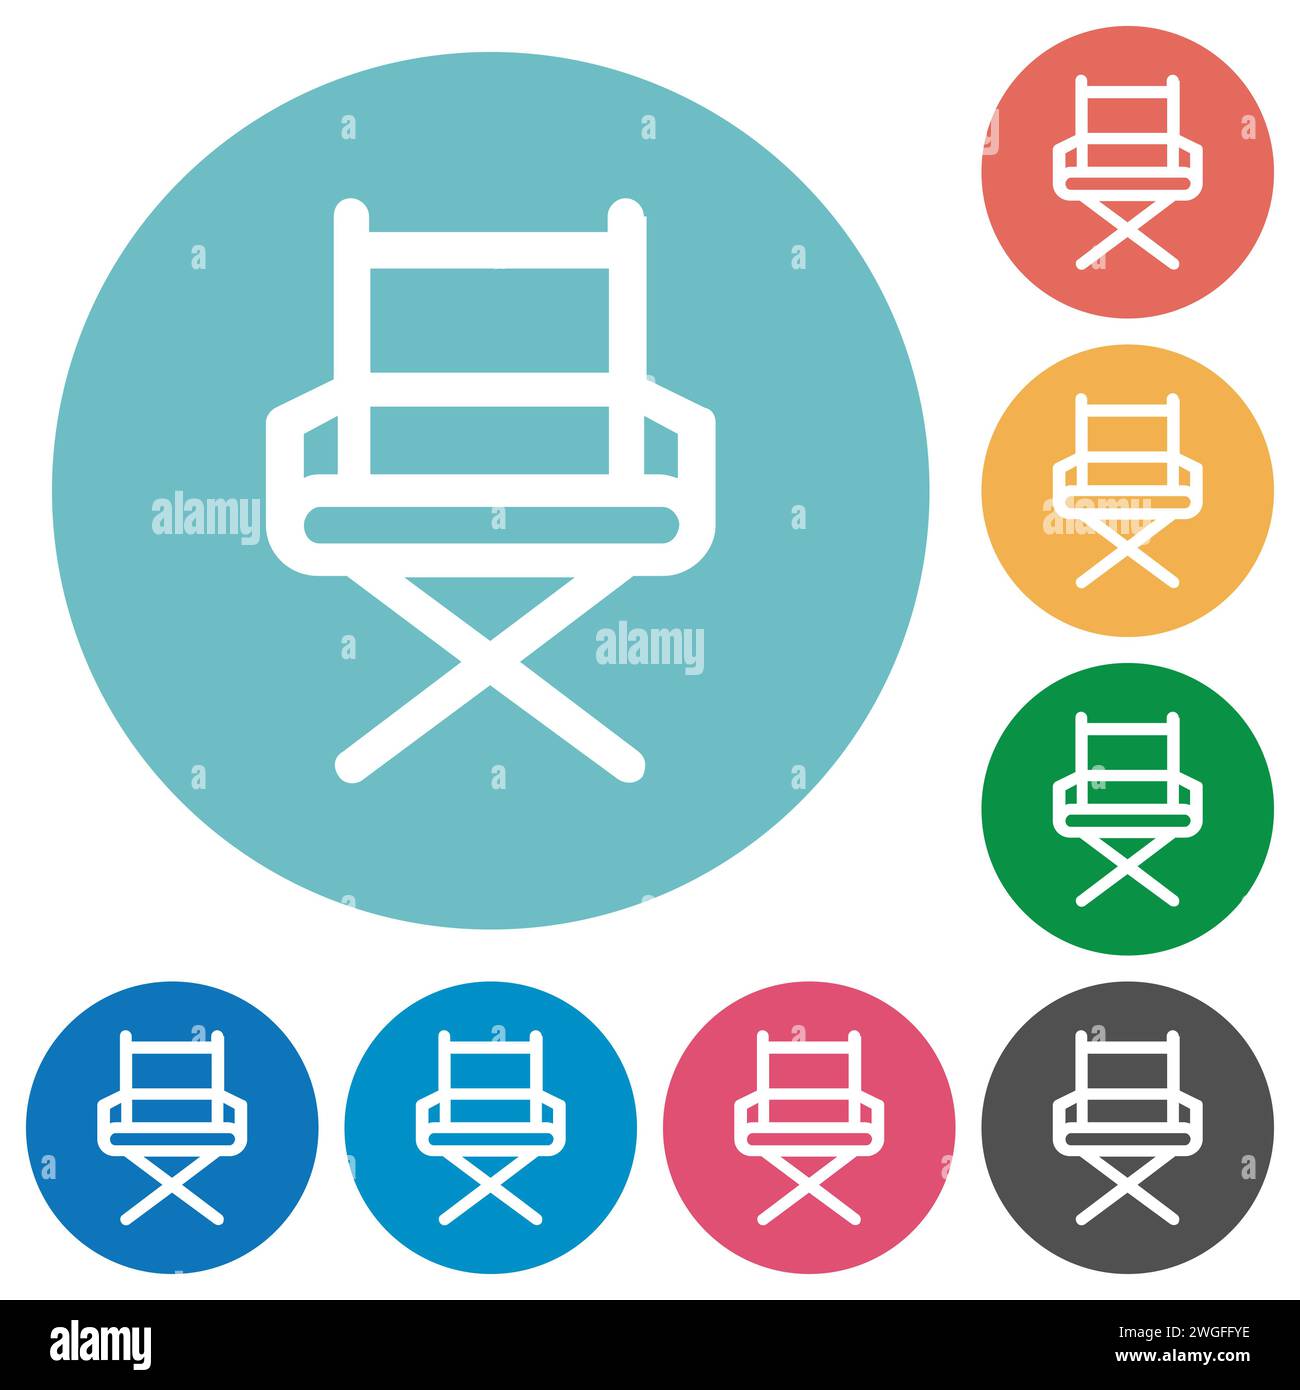 Der Stuhl des Direktors zeigt flache weiße Symbole auf runden farbigen Hintergründen Stock Vektor